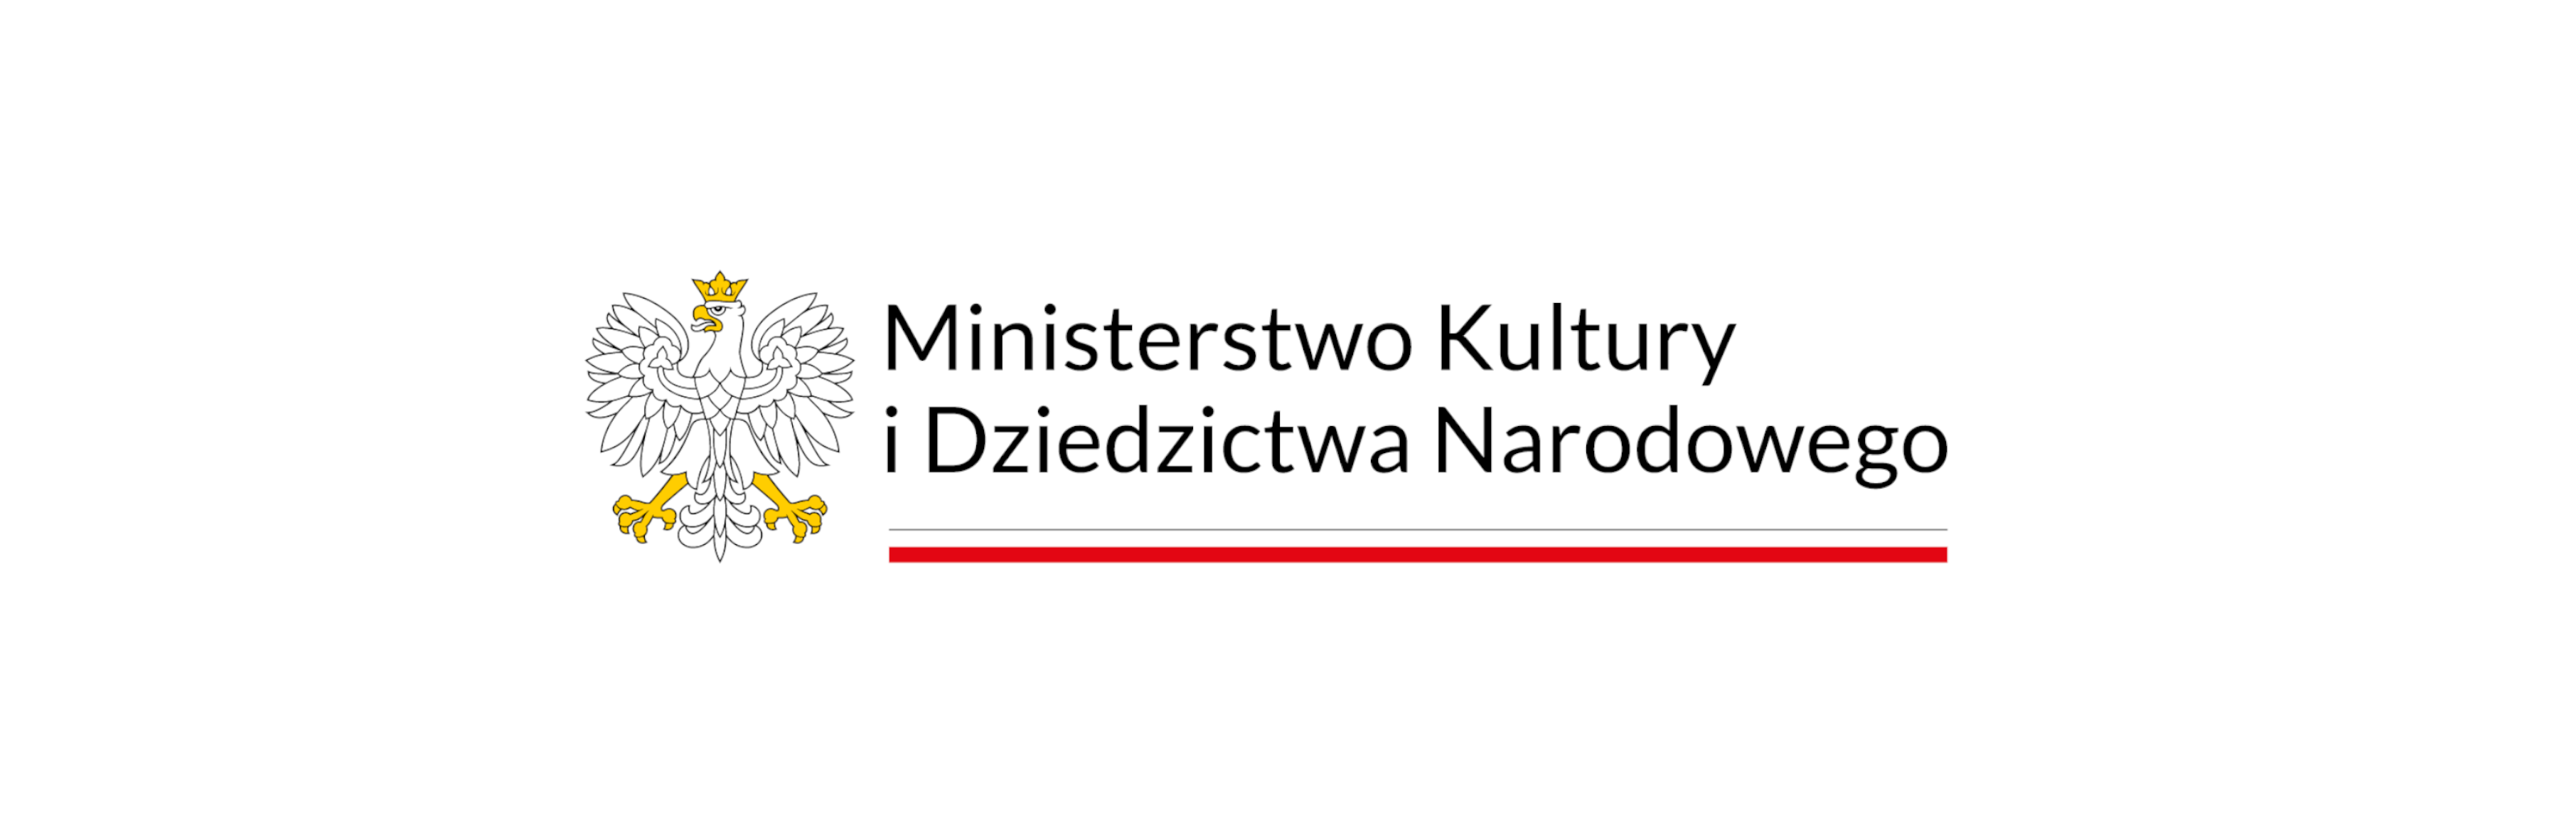 logotyp ministerstwa